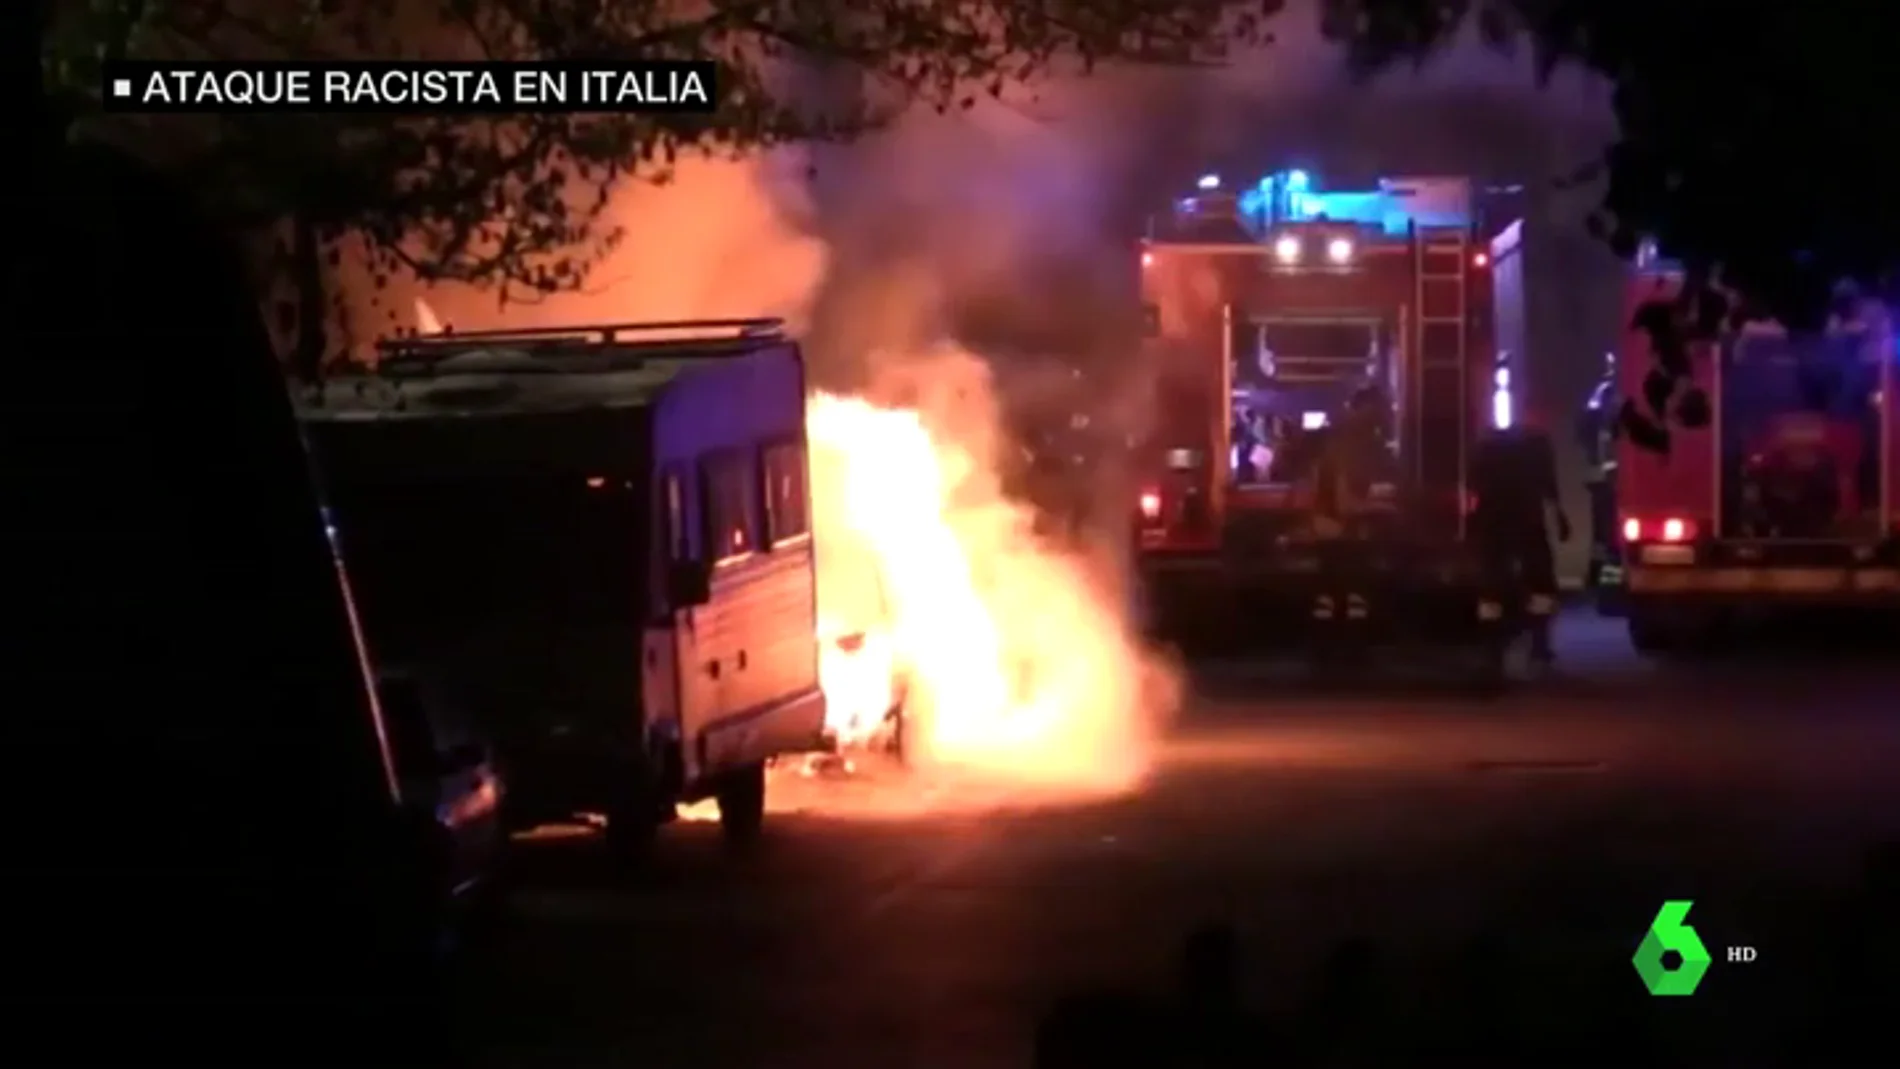 Grupos de ultraderecha italianos incendian contenedores e impulsan el odio en protesta a la acogida de familias gitanas en centros públicos